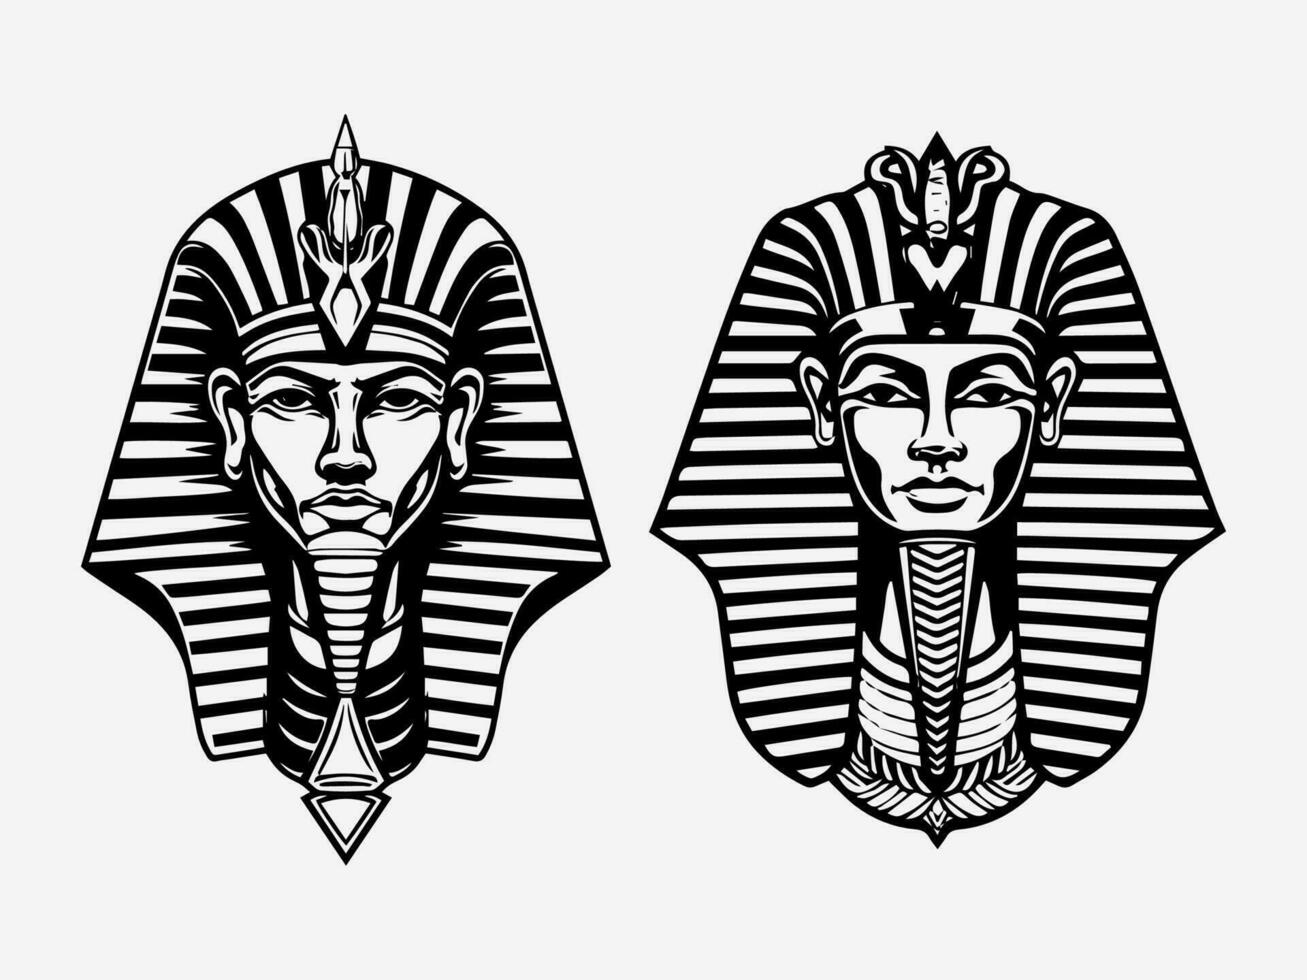 vorstelijk en boeiend Farao hand- getrokken logo ontwerp illustratie, oproepen tot oude Egyptische mystiek en Gezag vector